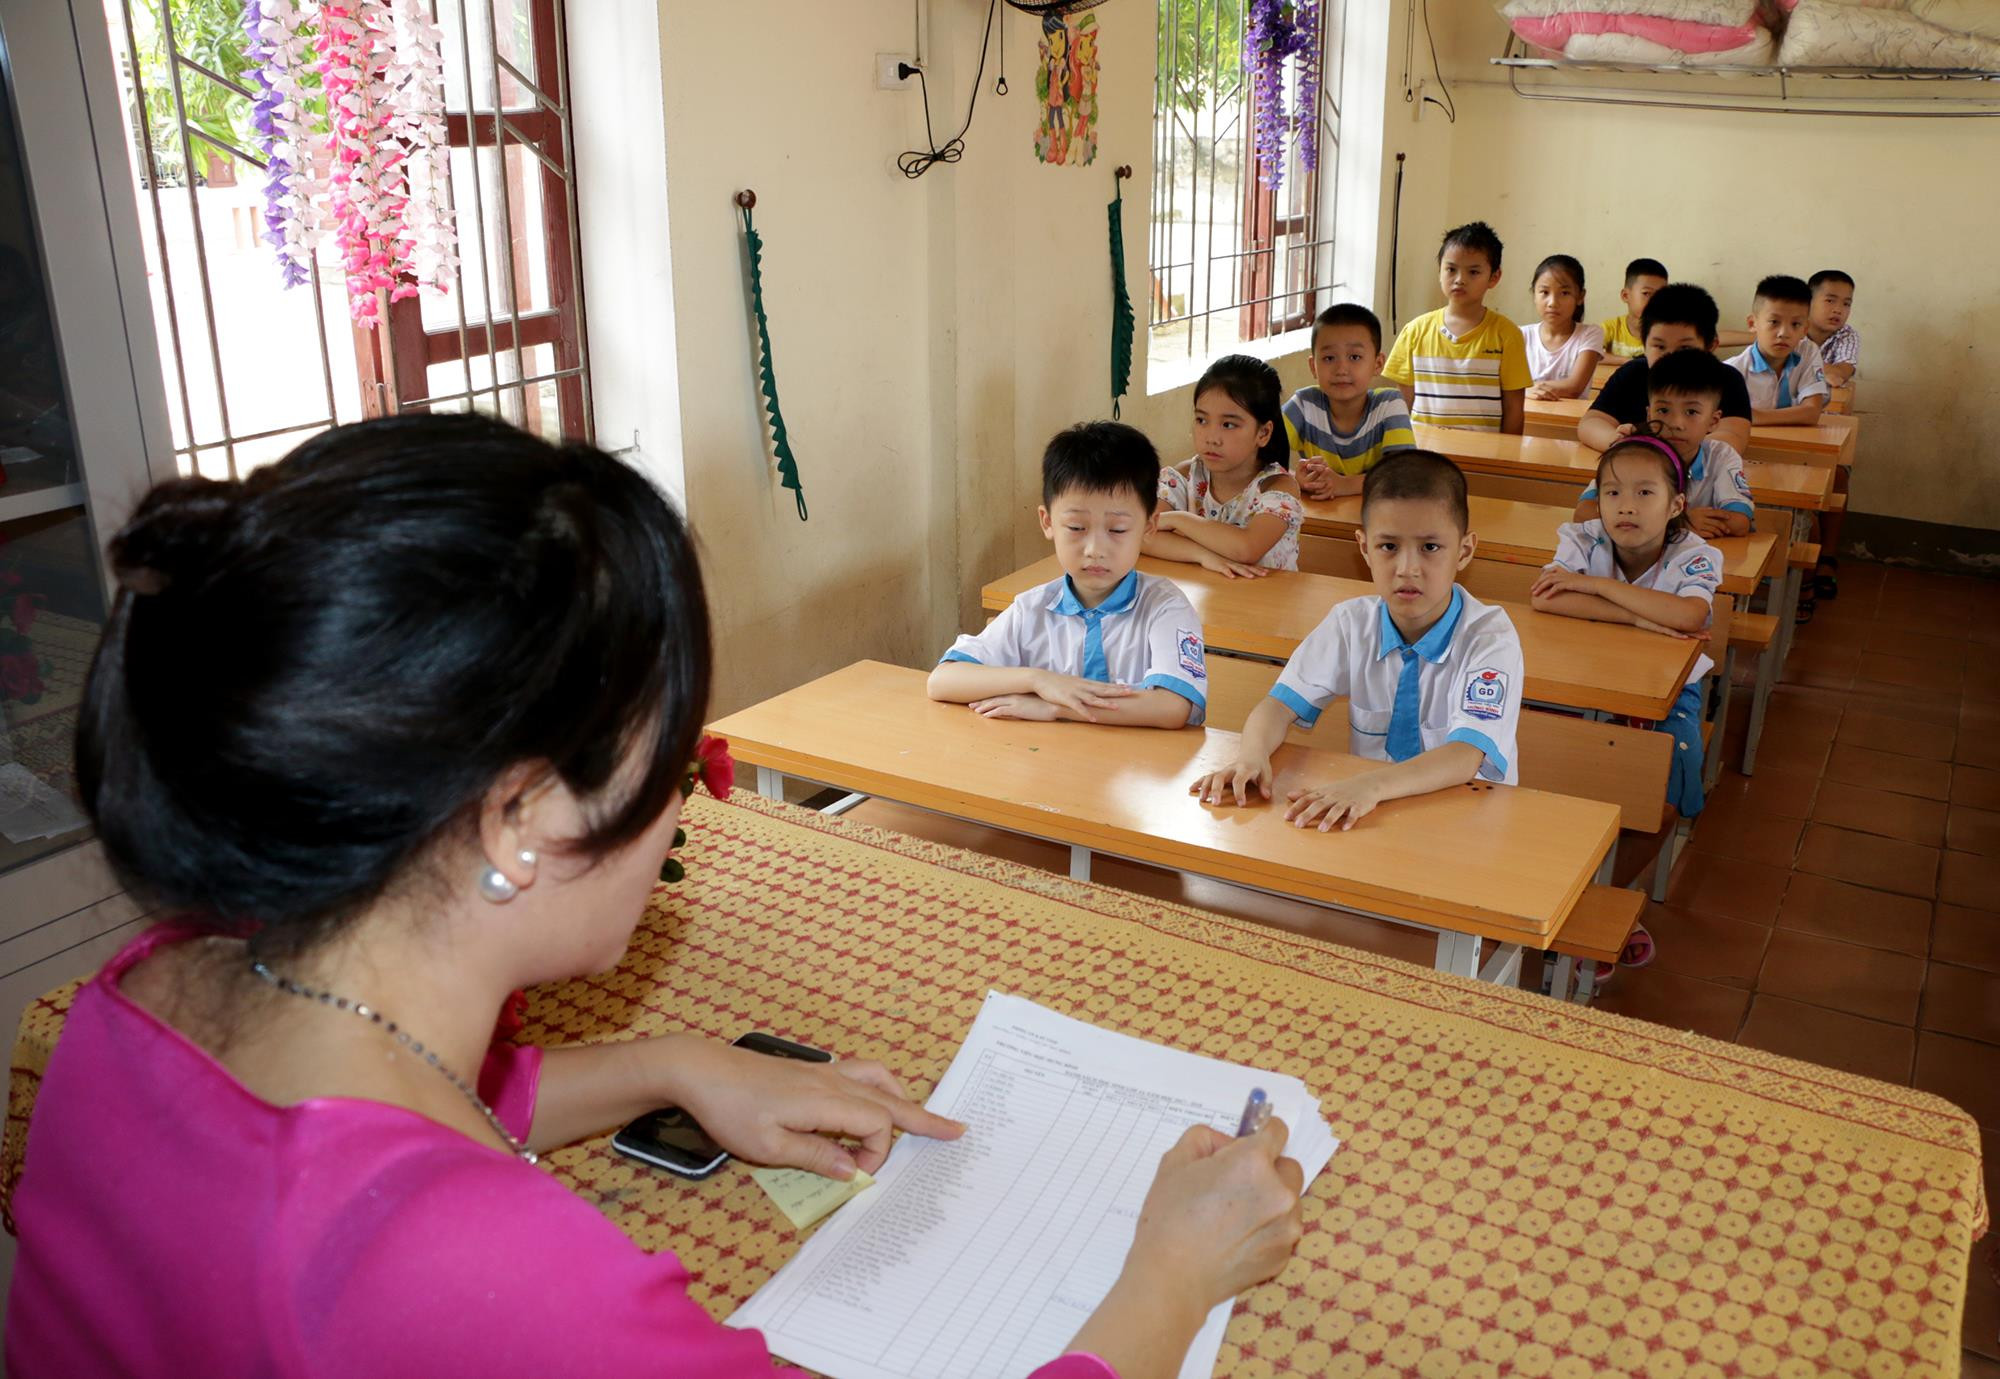 Chủ trương bốc thăm chọn lớp, chọn giáo viên chủ nhiệm của Phòng Giáo dục và Đào tạo thành phố Vinh đã nhận được sự quan tâm, ủng hộ của đông đảo phụ huynh, học sinh